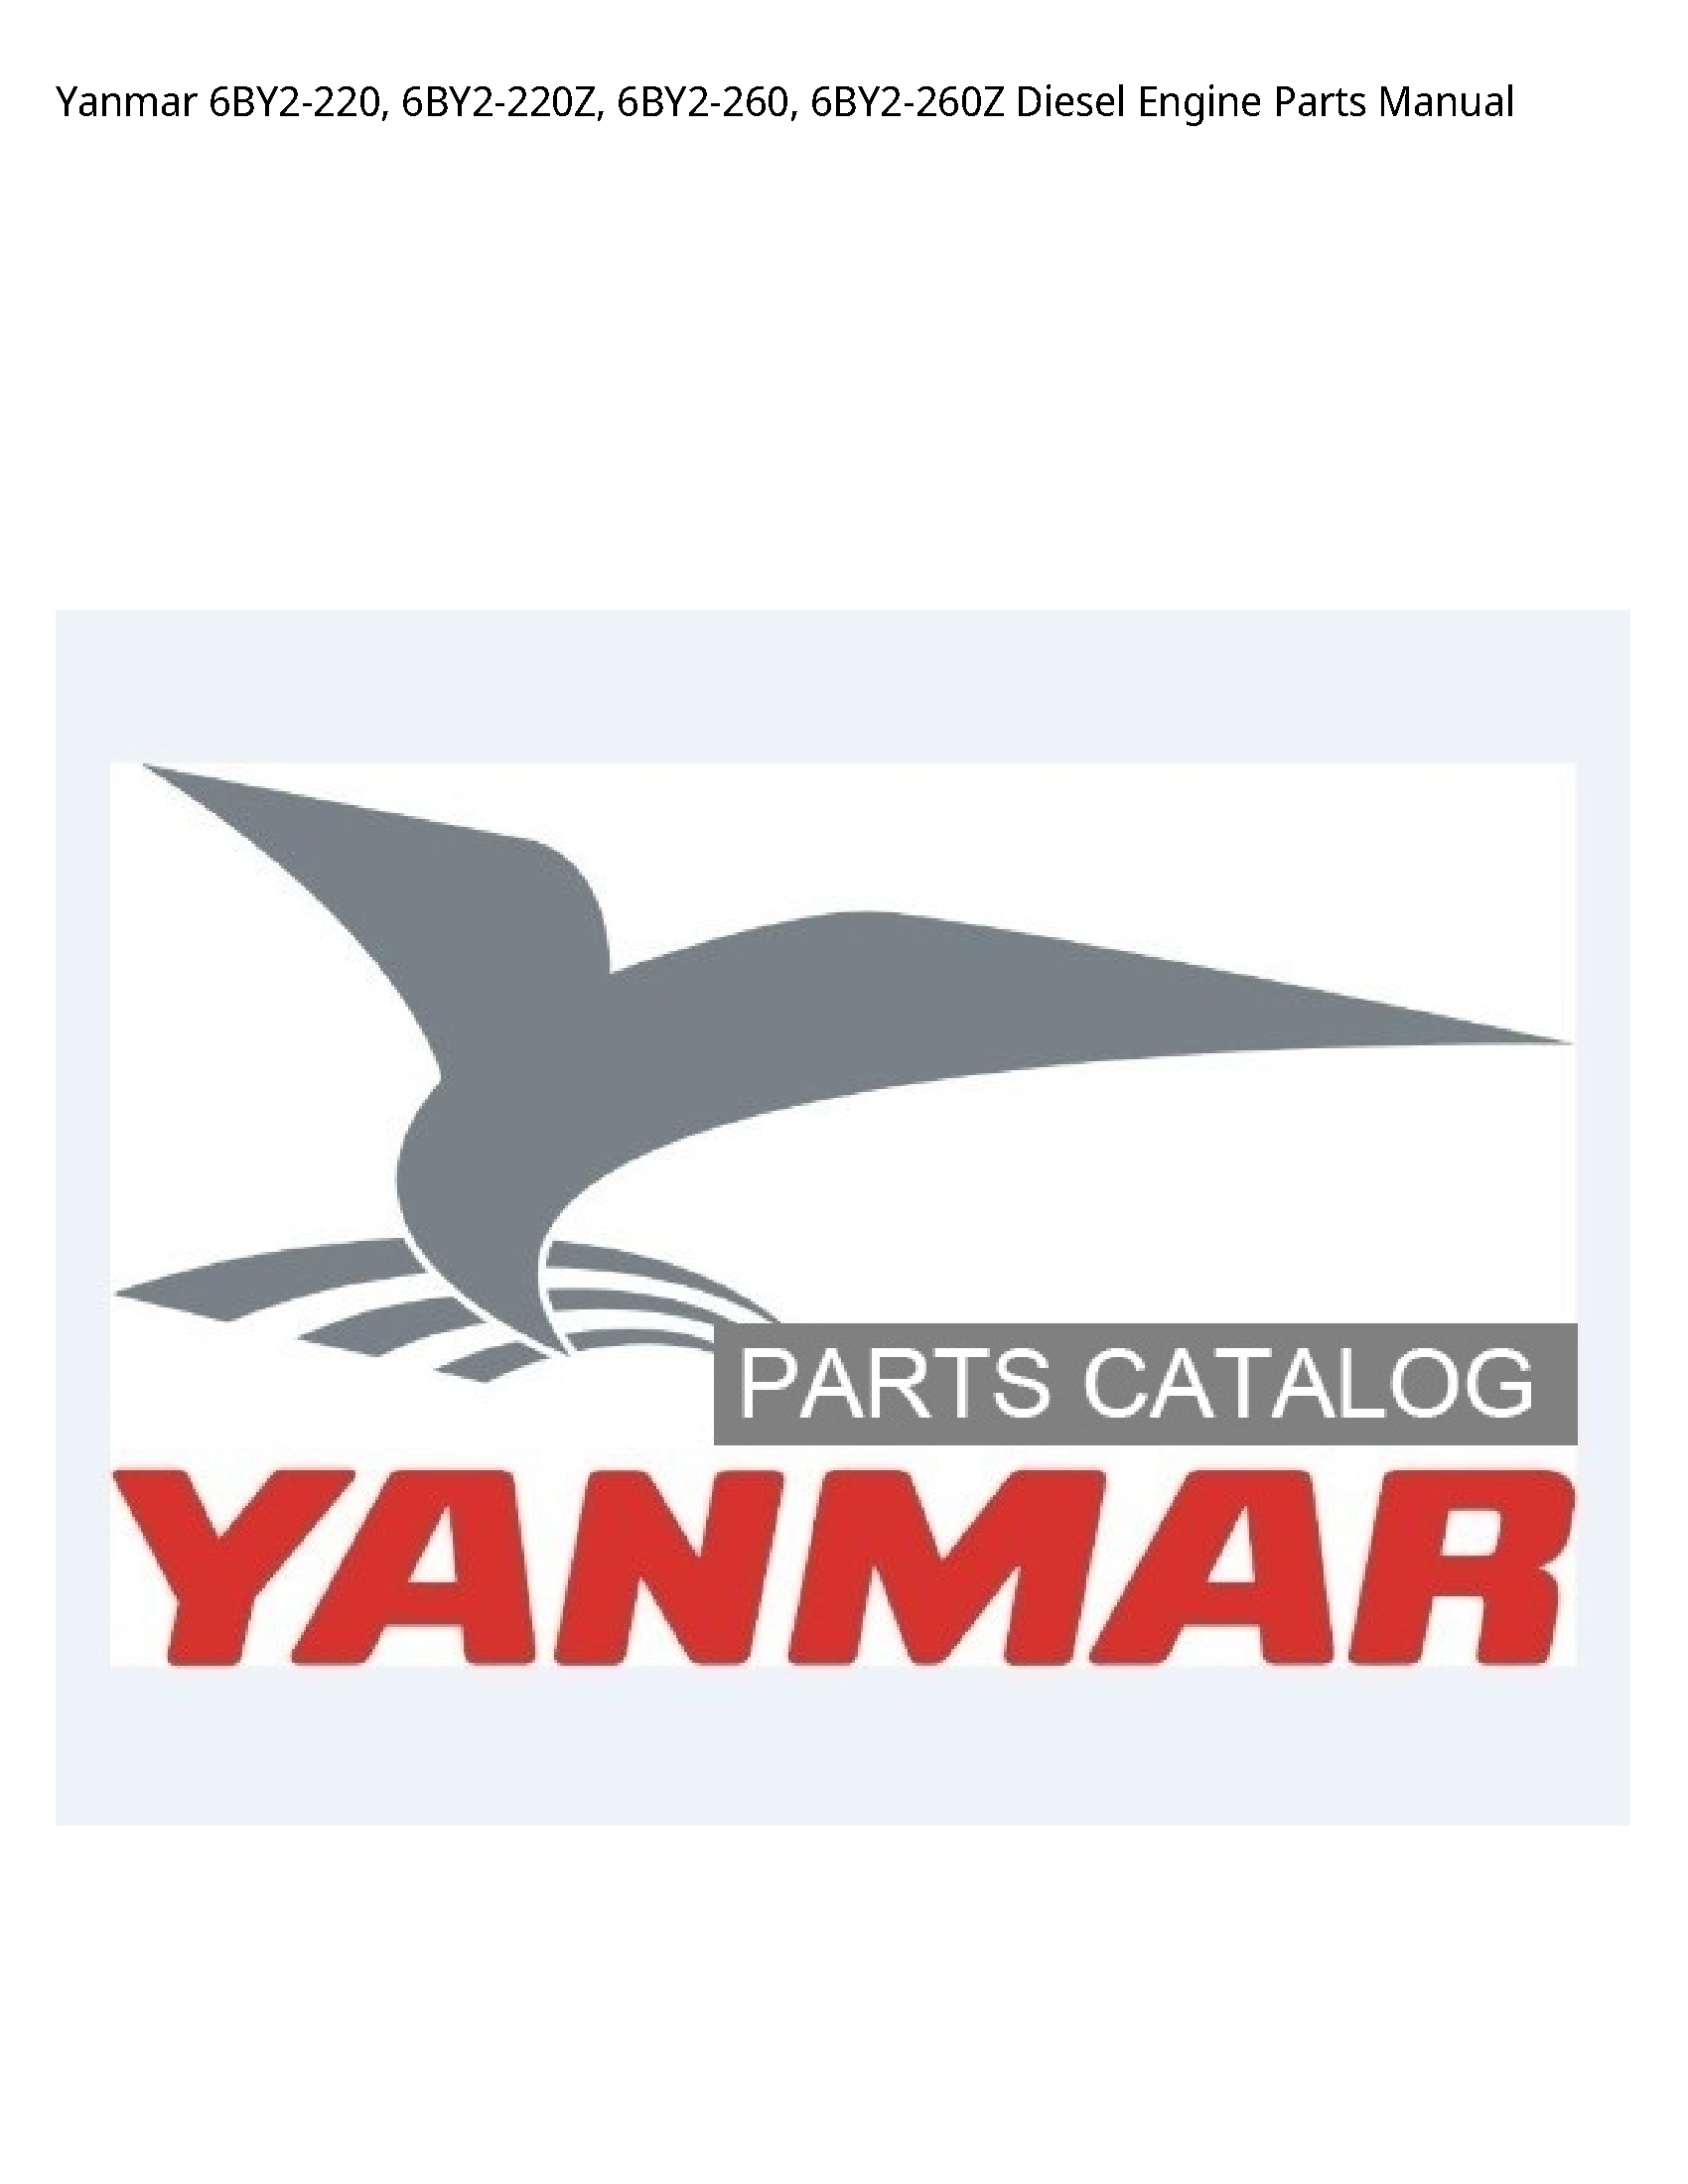 Yanmar 6BY2-220 Diesel Engine Parts manual